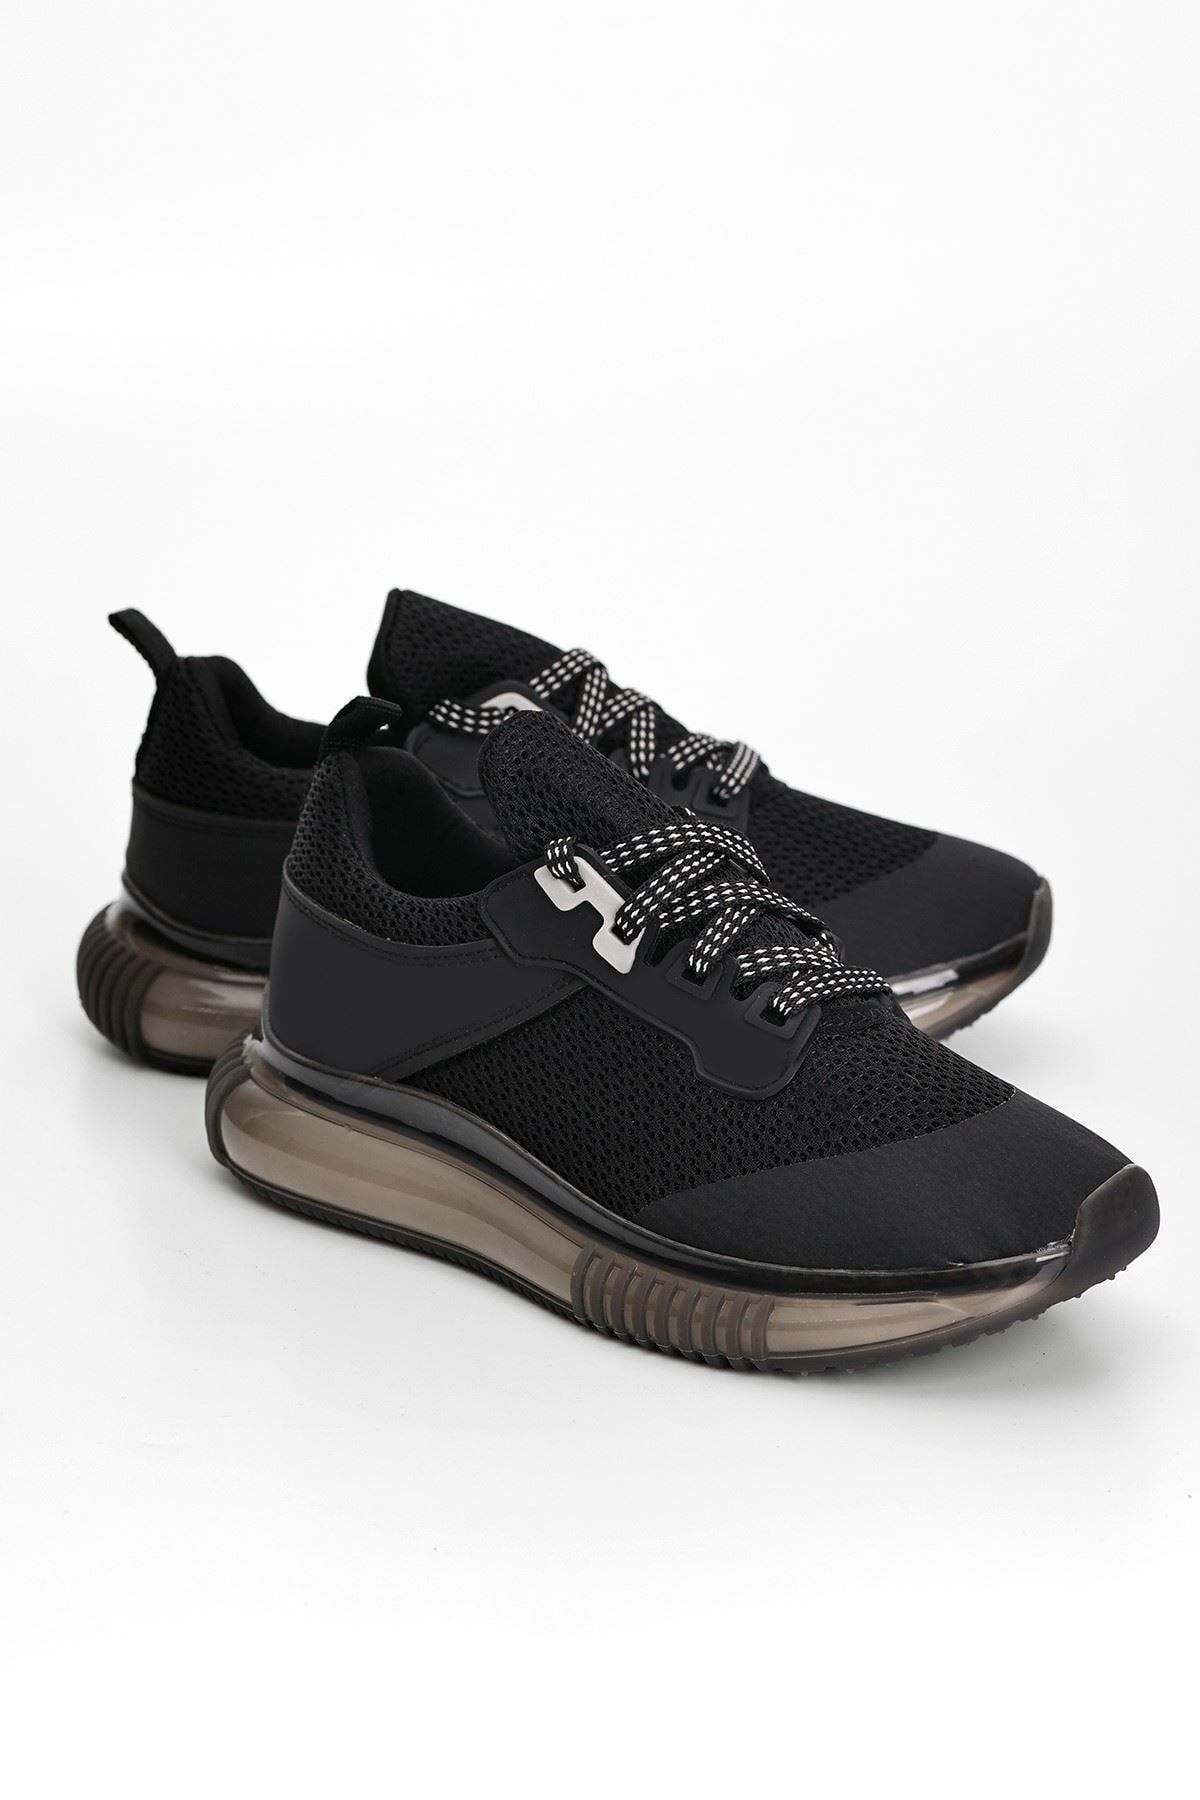 otuzbesshoes Doğa Hava Taban Detaylı Kadın Spor Ayakkabı Siyah